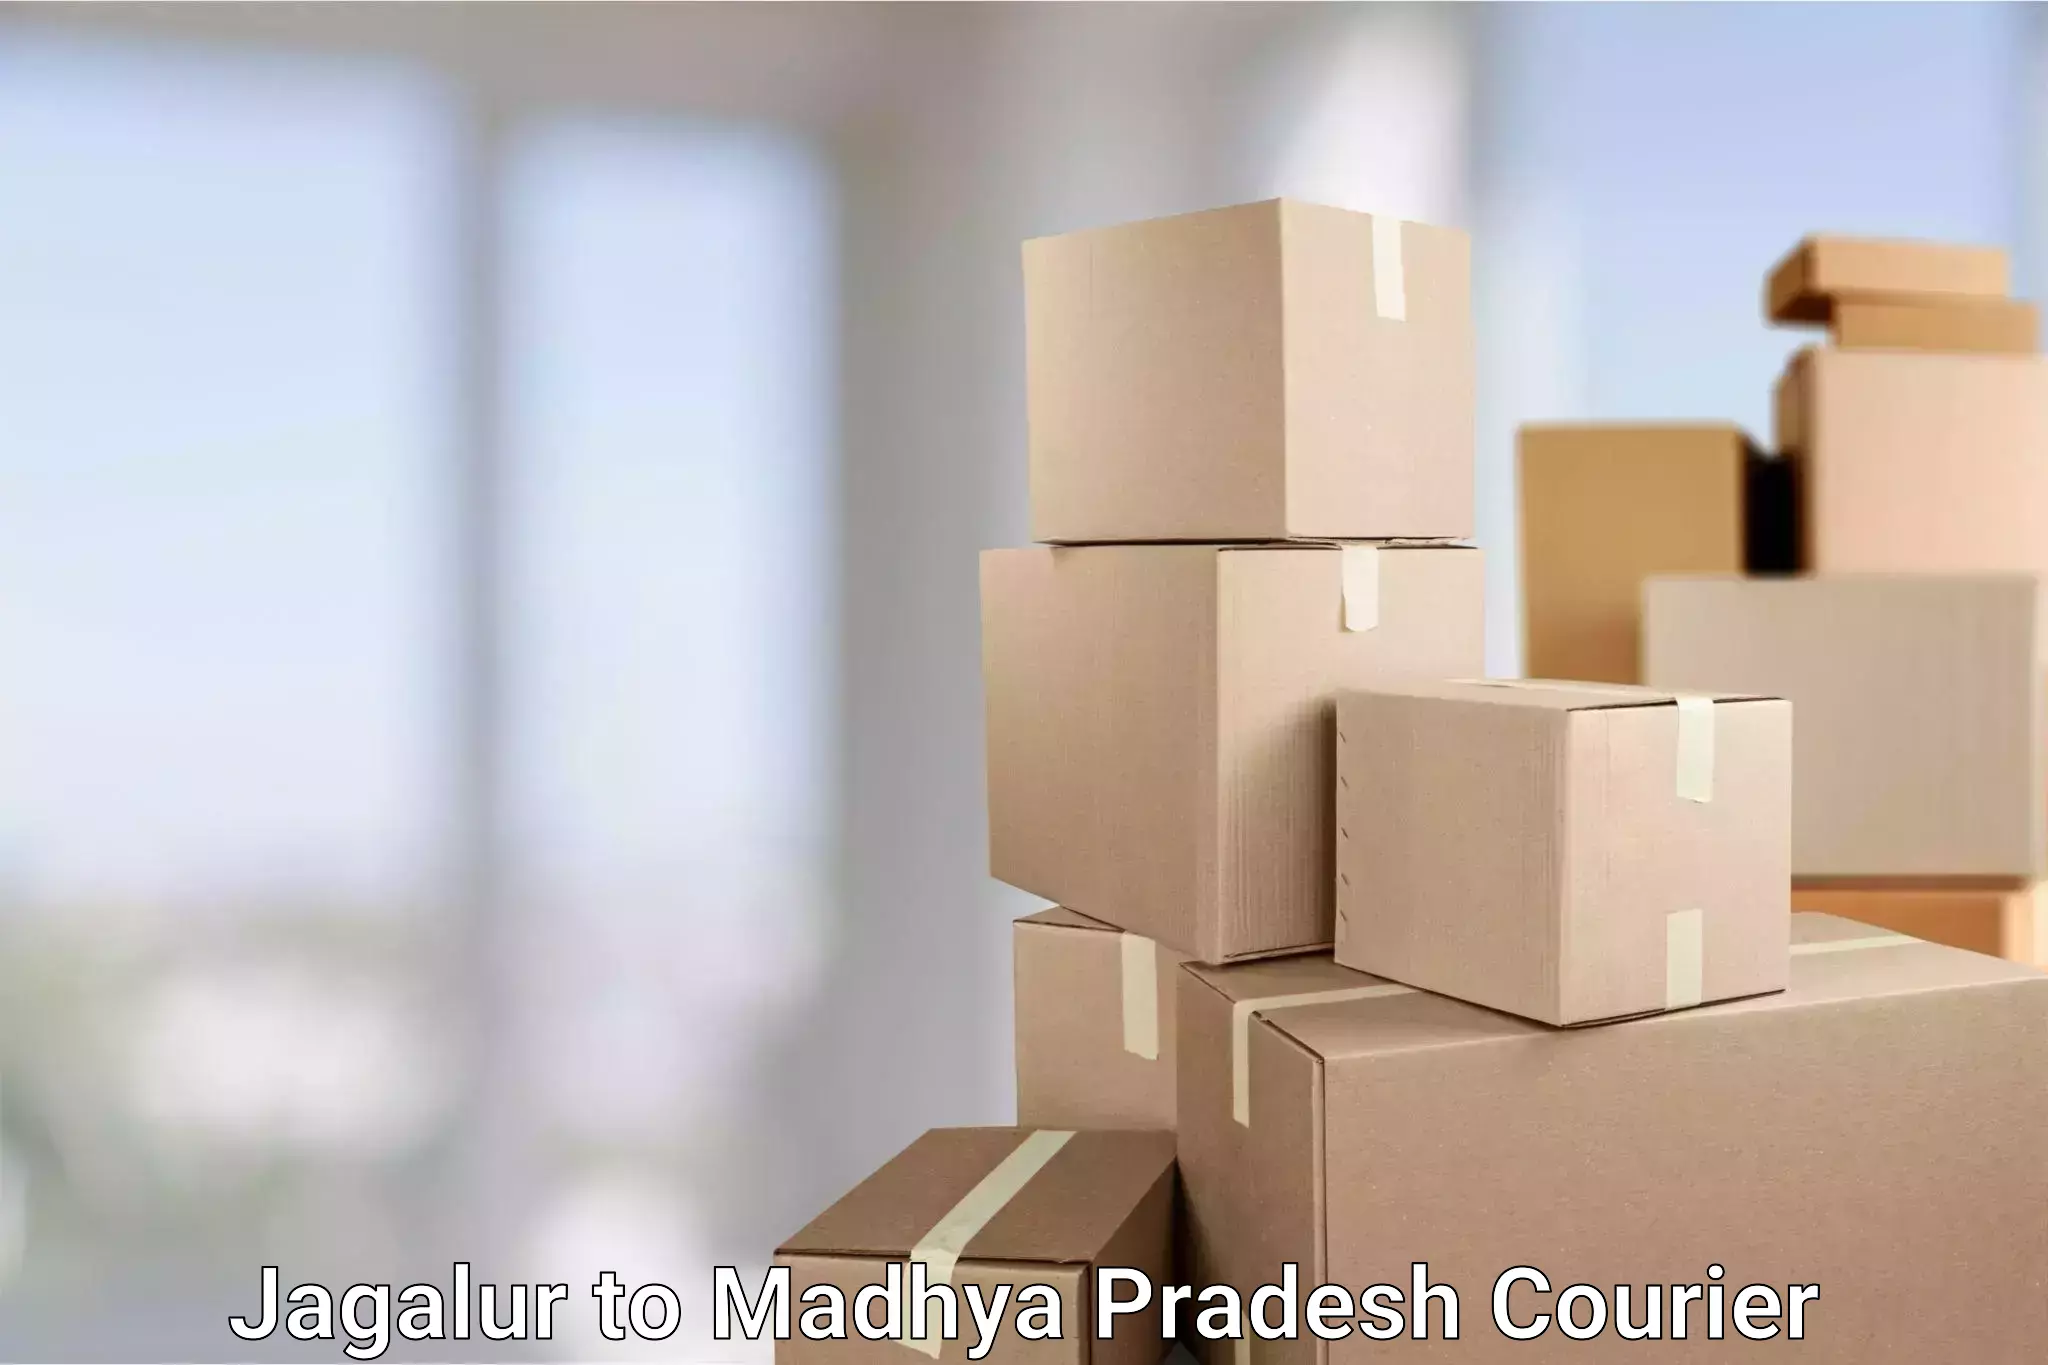 Flexible parcel services Jagalur to Sohagi